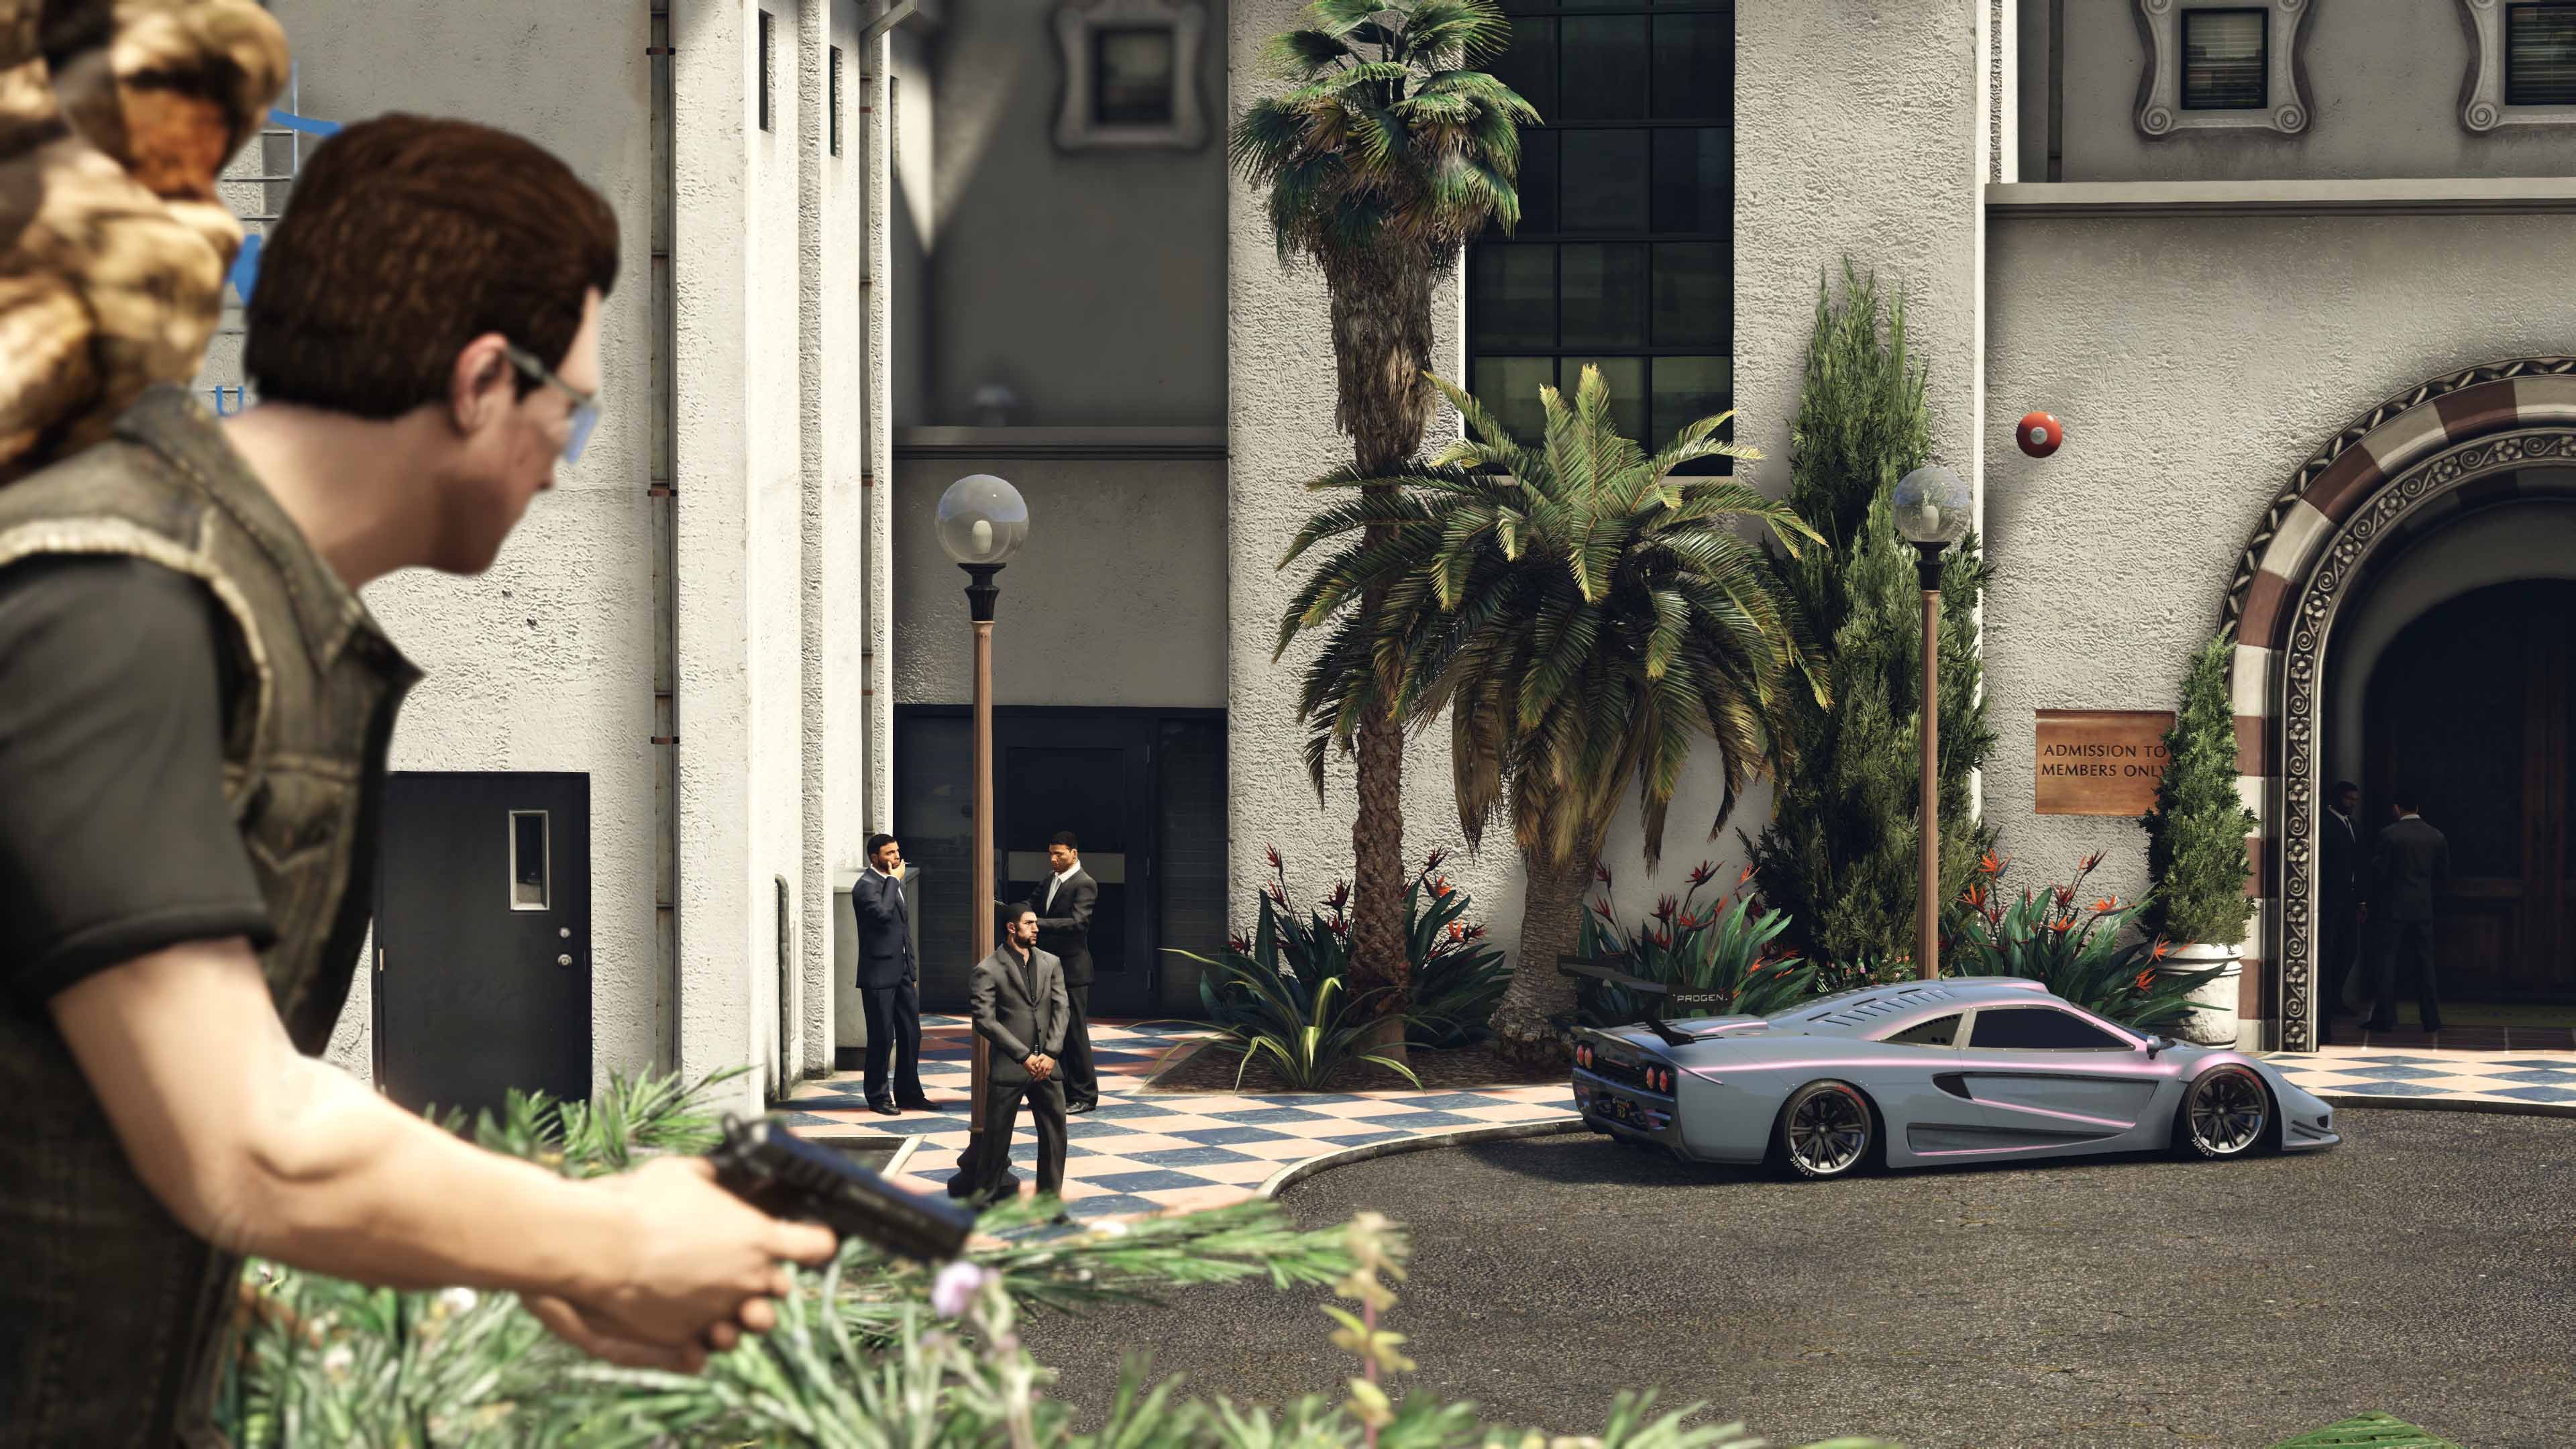 Скриншот 2 к игре Grand Theft Auto V (GTA 5) [v1.0.1180.1 (SP)/1.41]  (2015) PC | RePack от R.G. Механики